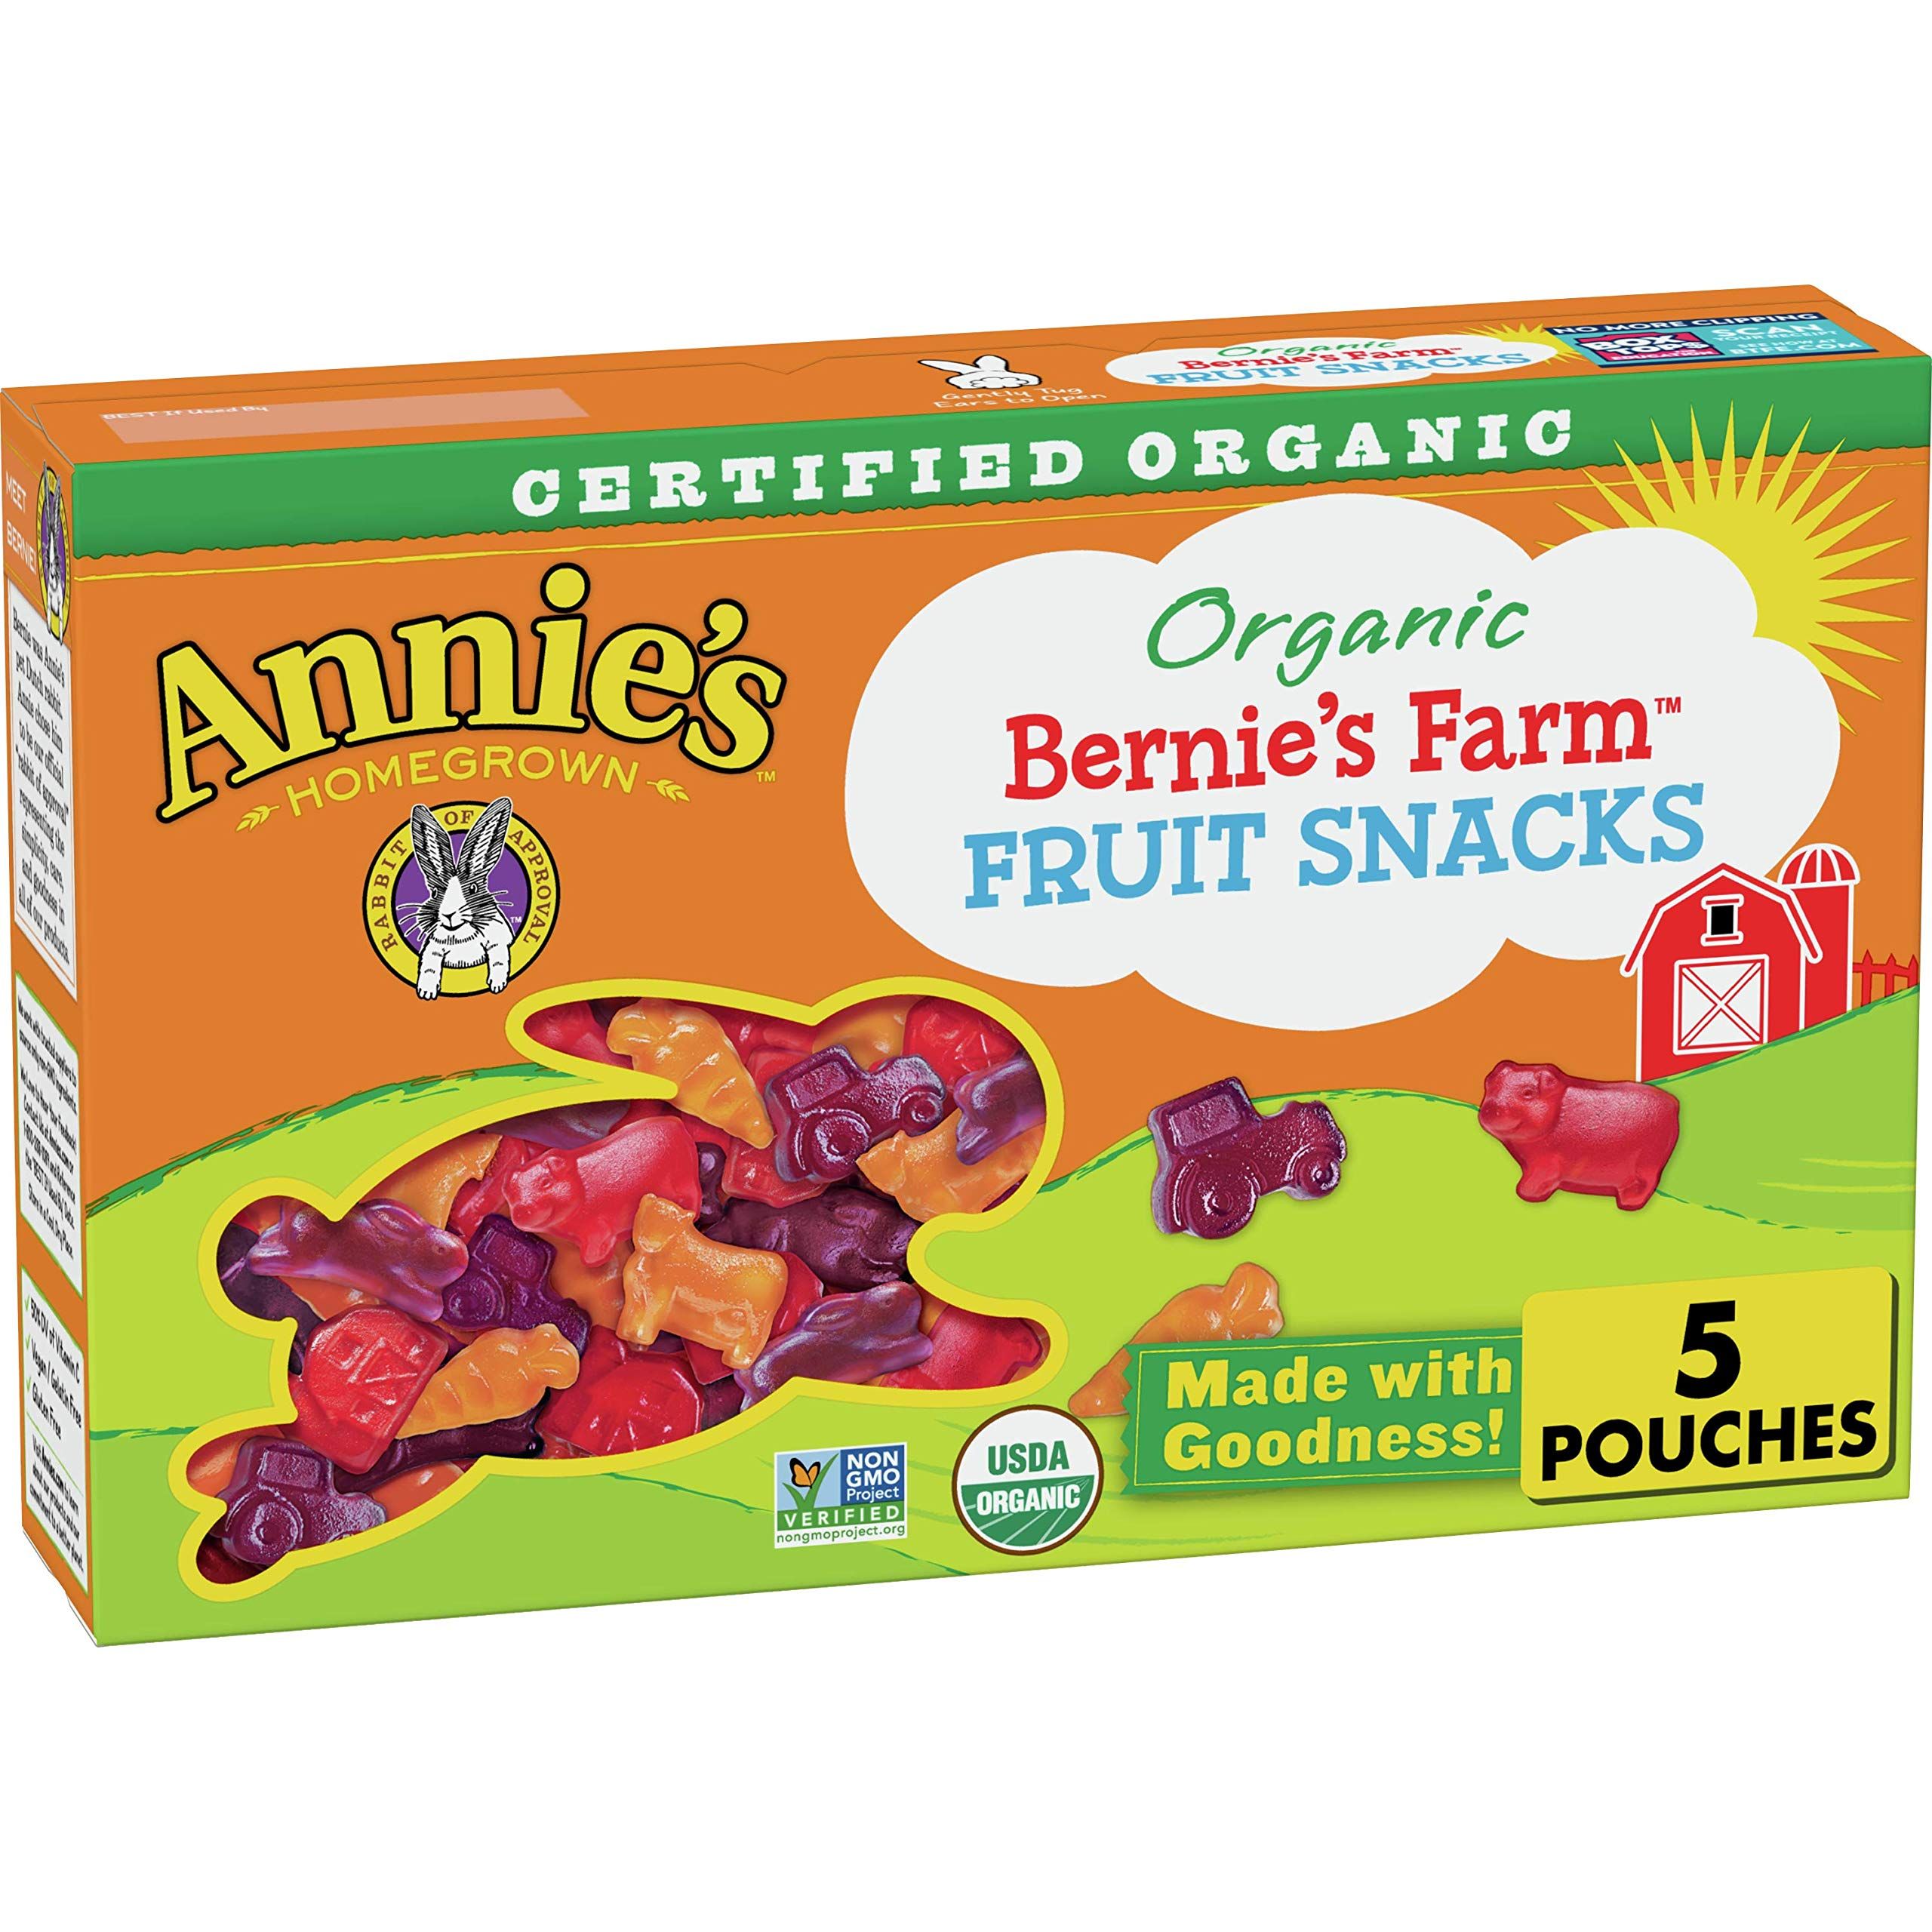 Annie's Organic Bernie's Farm Fruit Snacks, Gluten Free, 4 oz, 5 ct | Amazon (US)